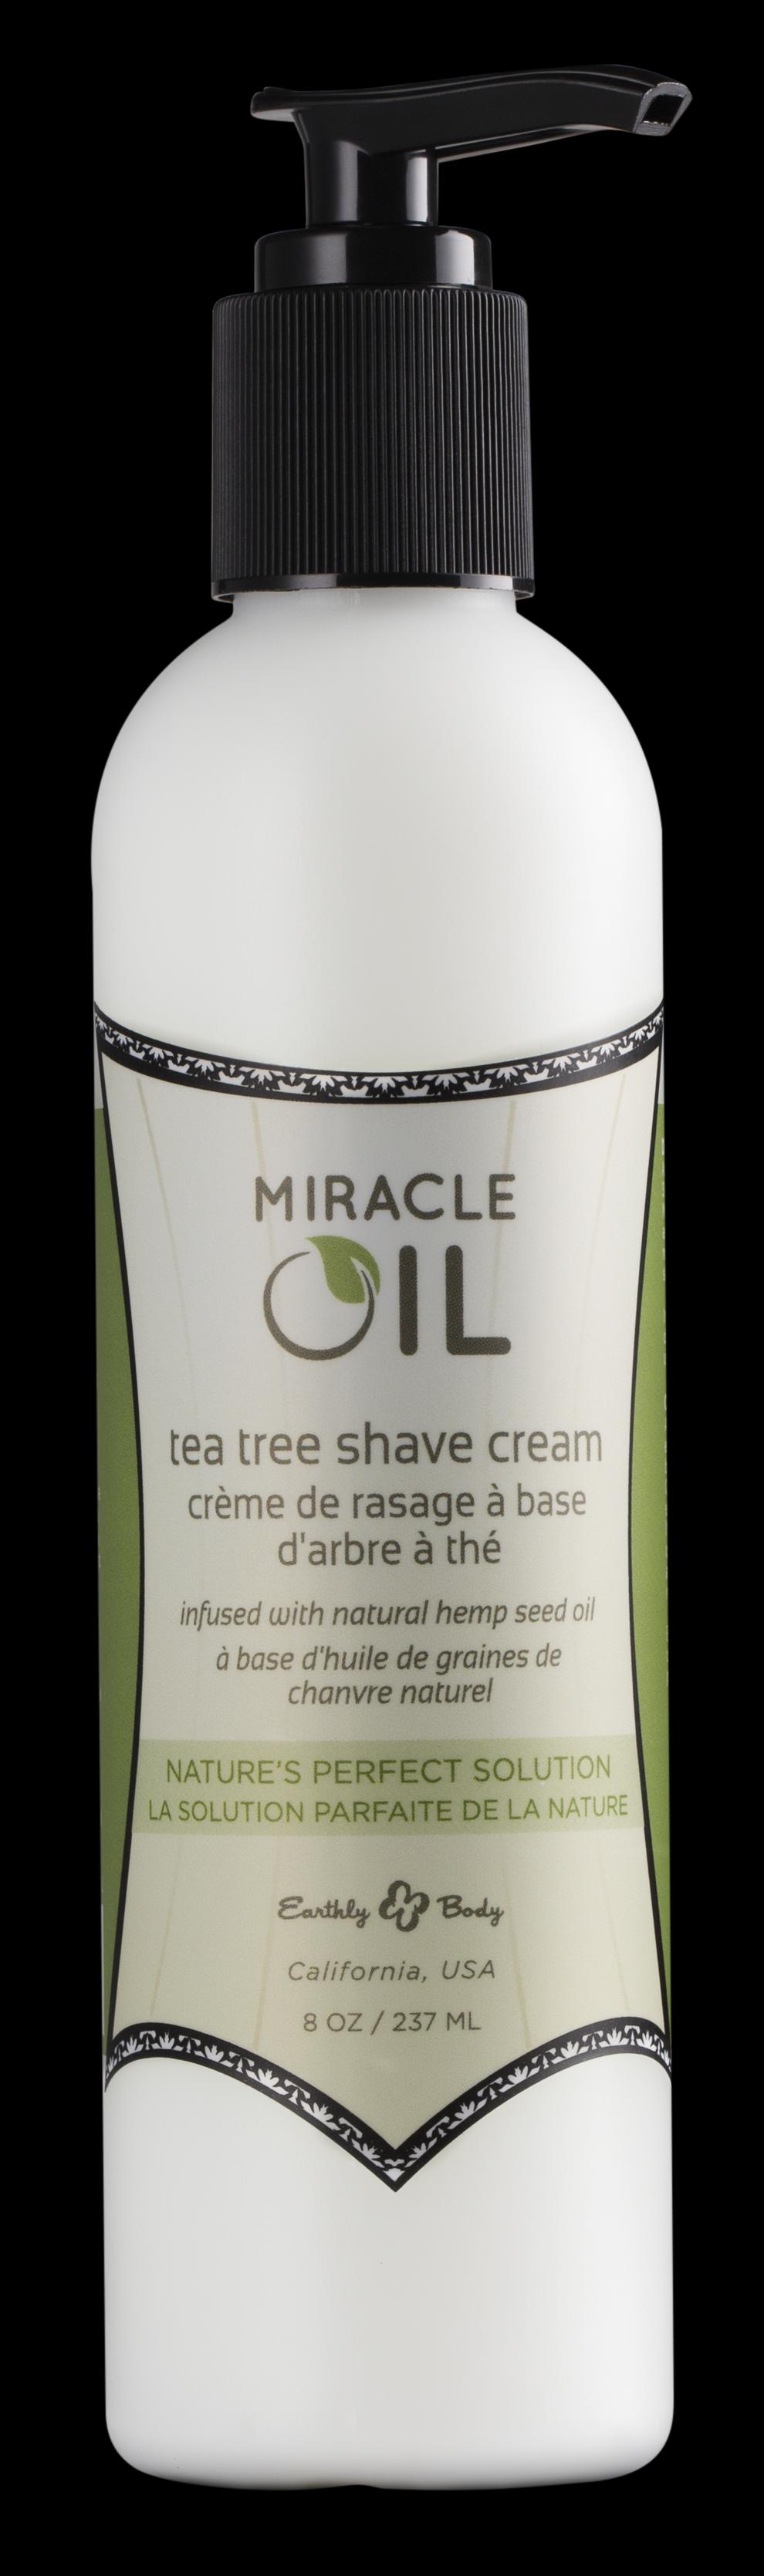 Miracle Oil Shave Creme - Krema za brijanje sa uljem čajevca